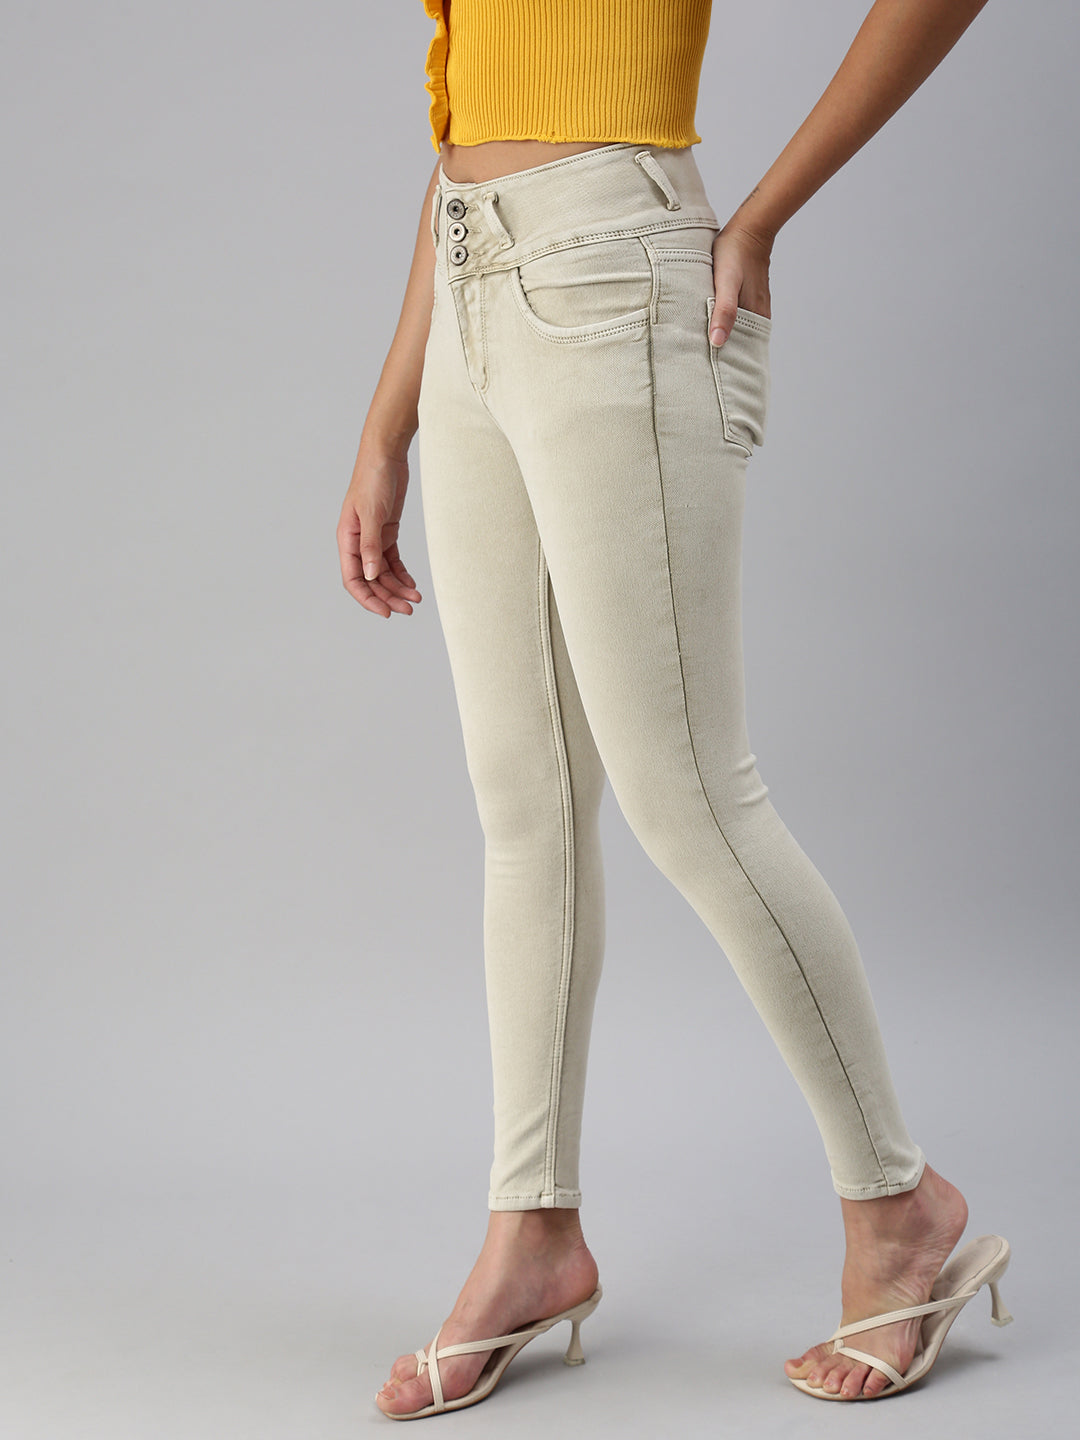 Women's Beige Solid Denim Skinny Jeans